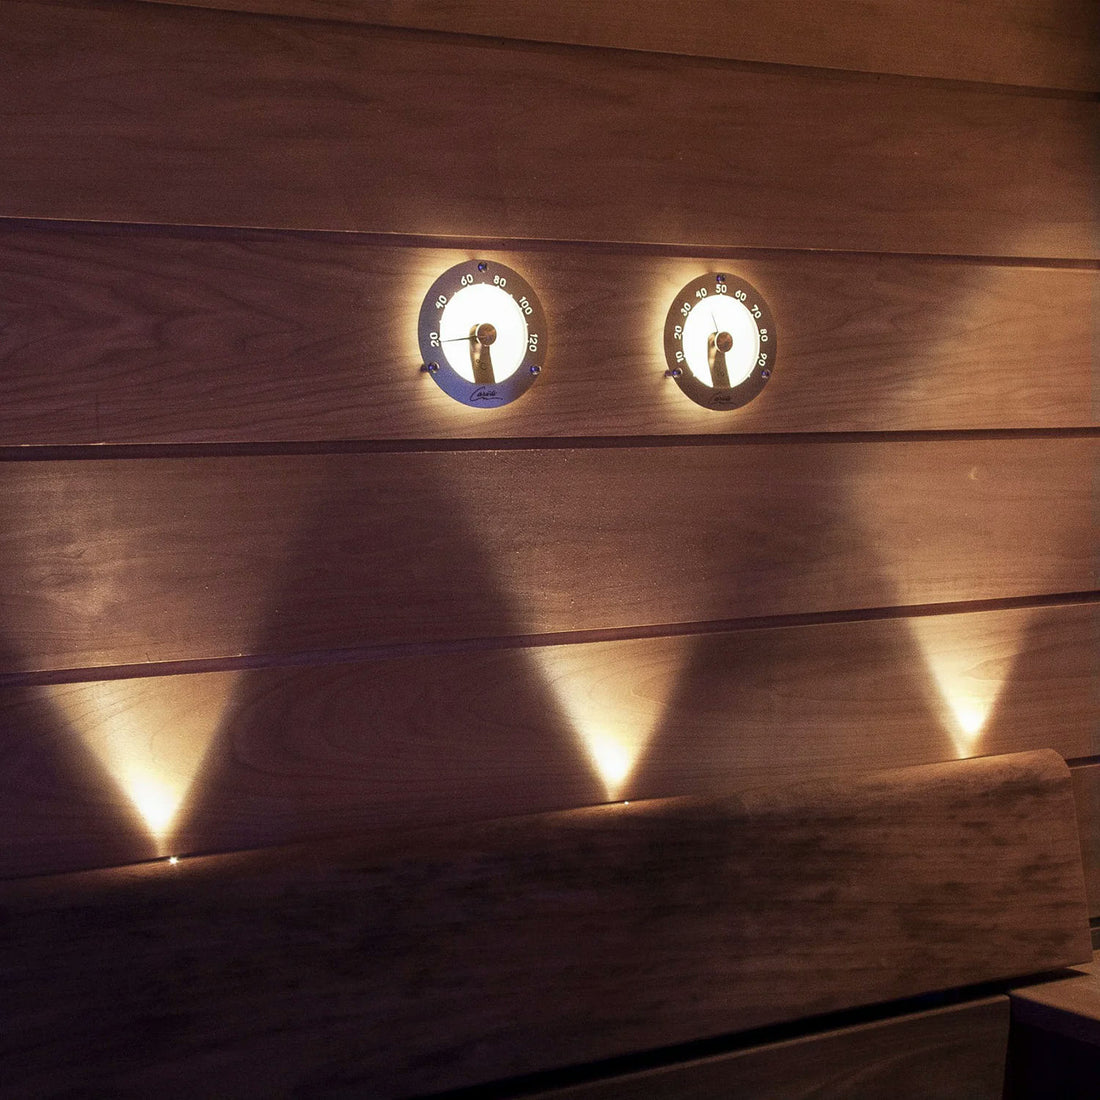 CARIITTI Illuminated Sauna Thermometer - Stainless Steel